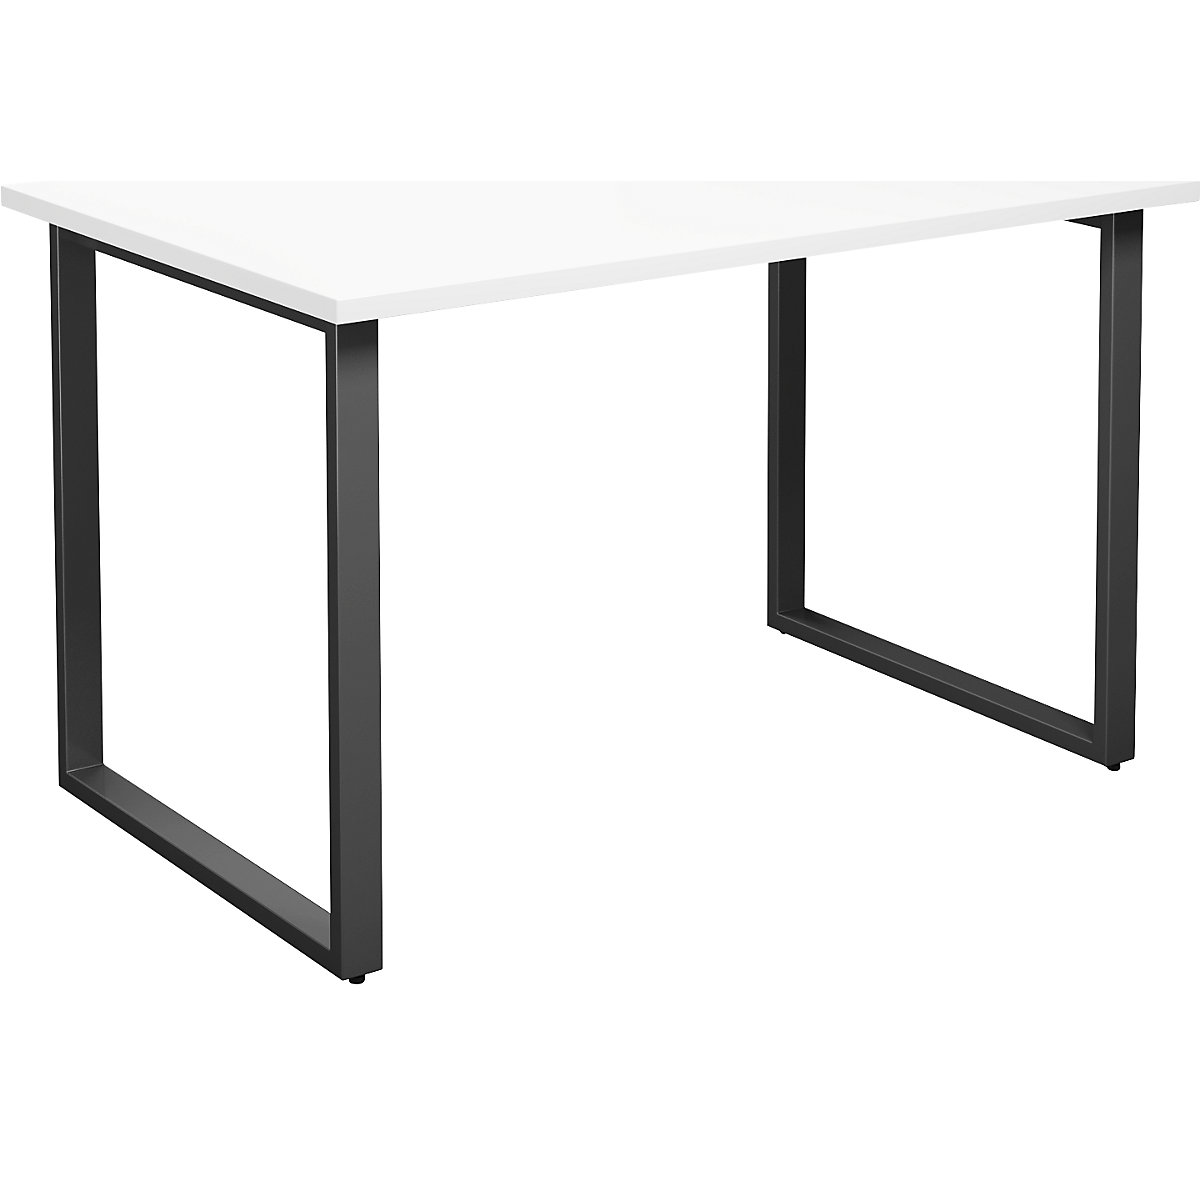 DUO-O multi-purpose desk, straight tabletop, WxD 1200 x 800 mm, white, black-5